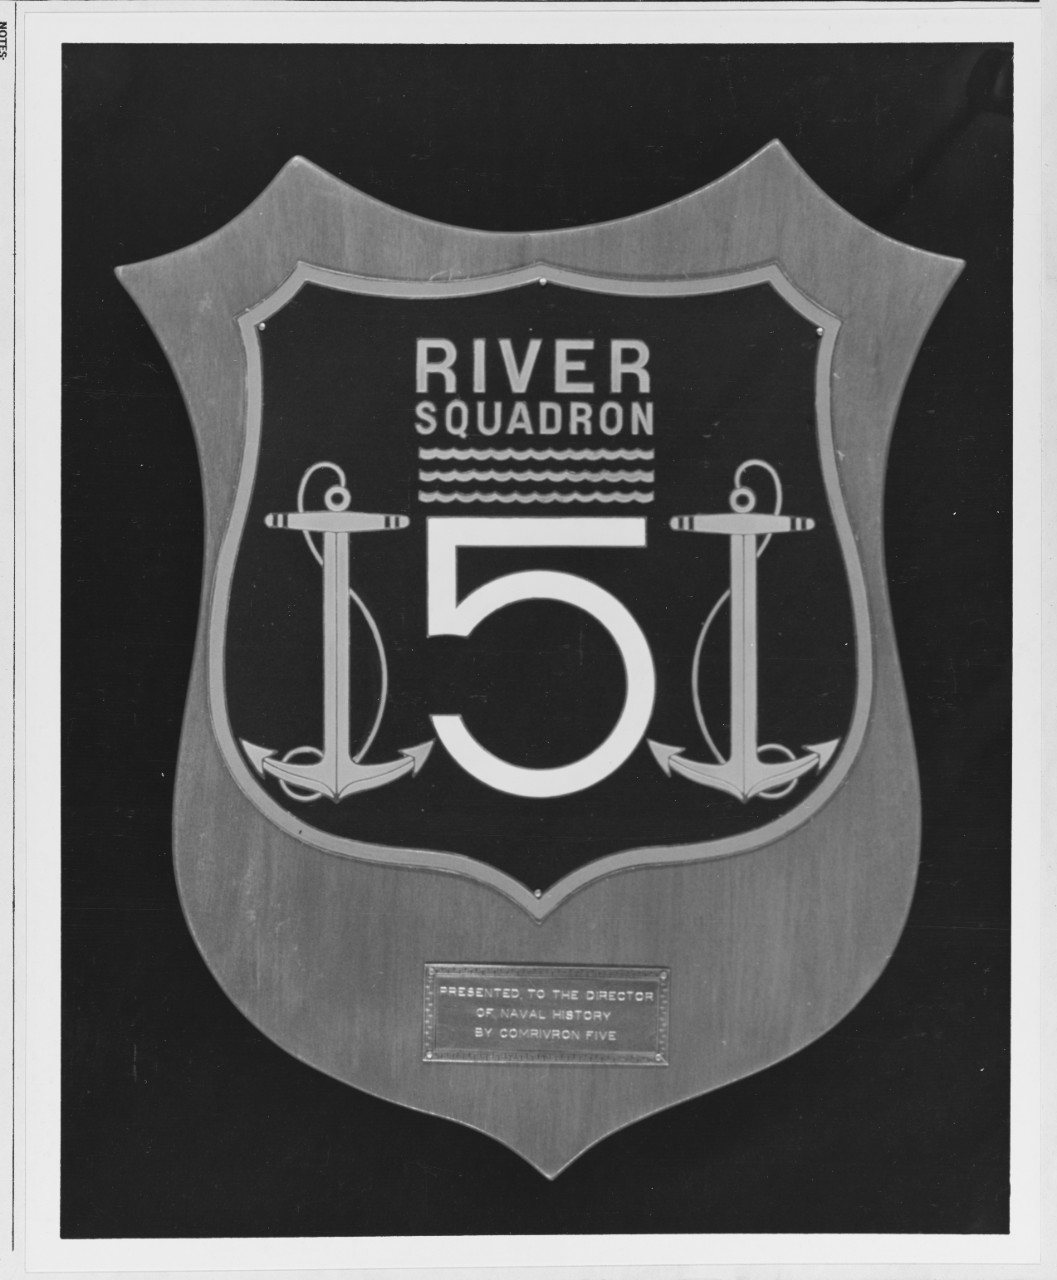 Insignia:  River Squadron Five